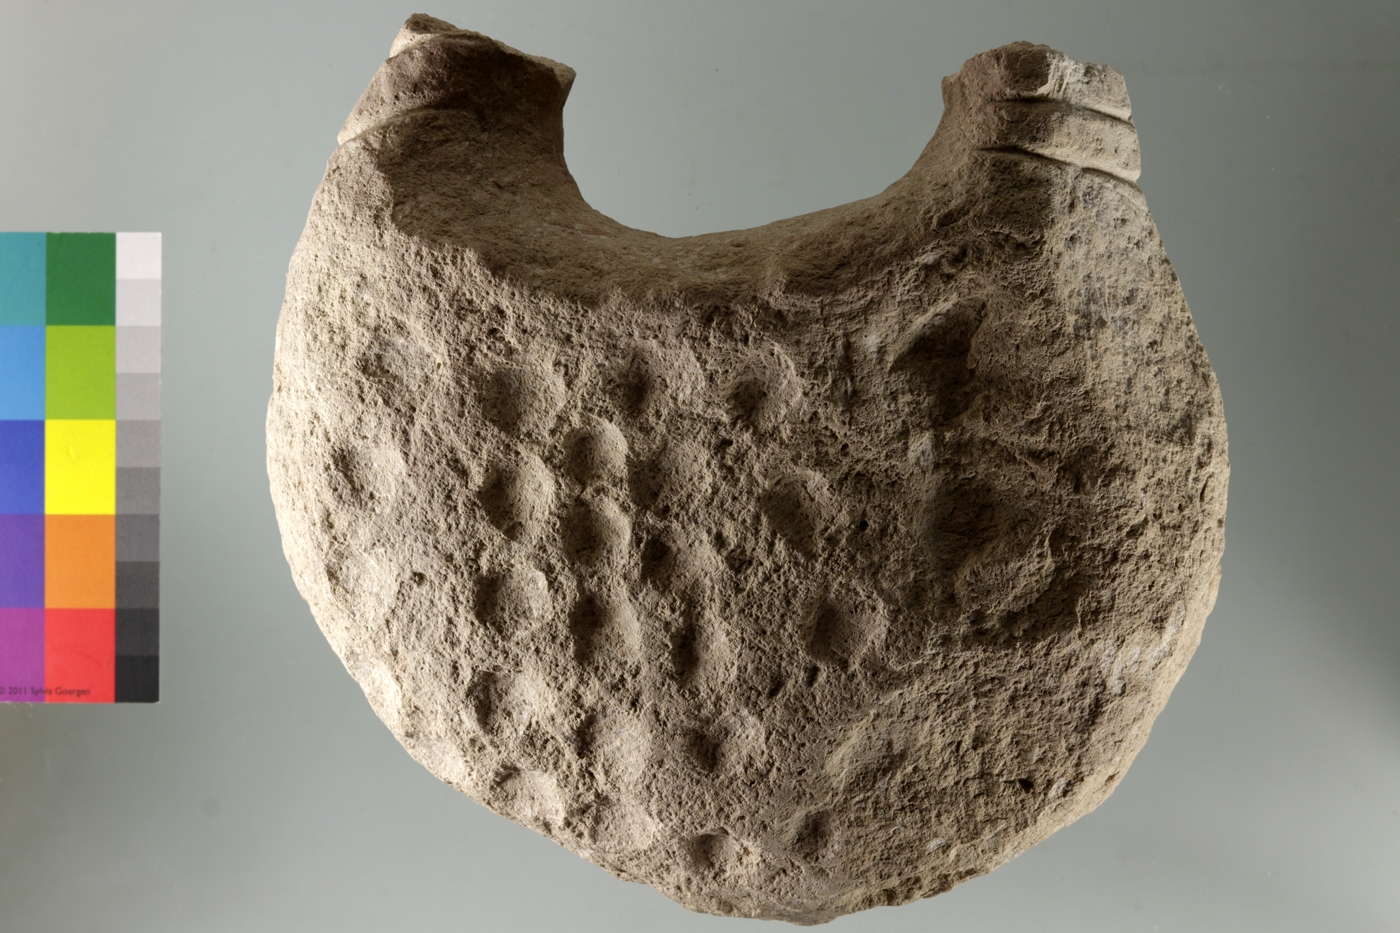 Ungewöhnliches „Handtaschen“-förmiges Steinobjekt. Die „Griffe“ sind an beiden Enden abgebrochen, der Körper des Objekts mit runden Vertiefungen bedeckt.